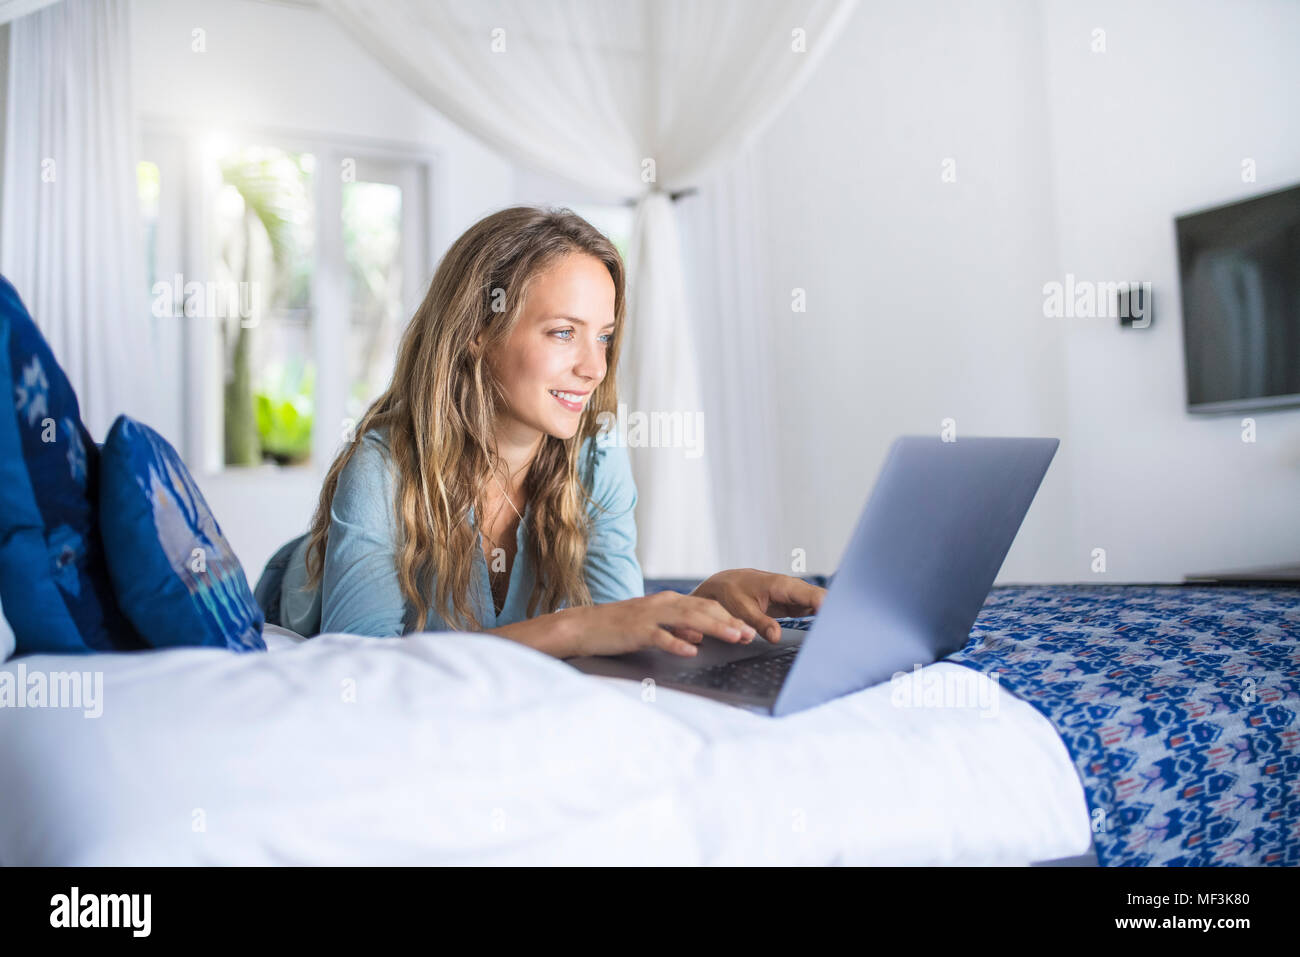 Lächelnde Frau im Bett liegend mit Laptop Stockfoto